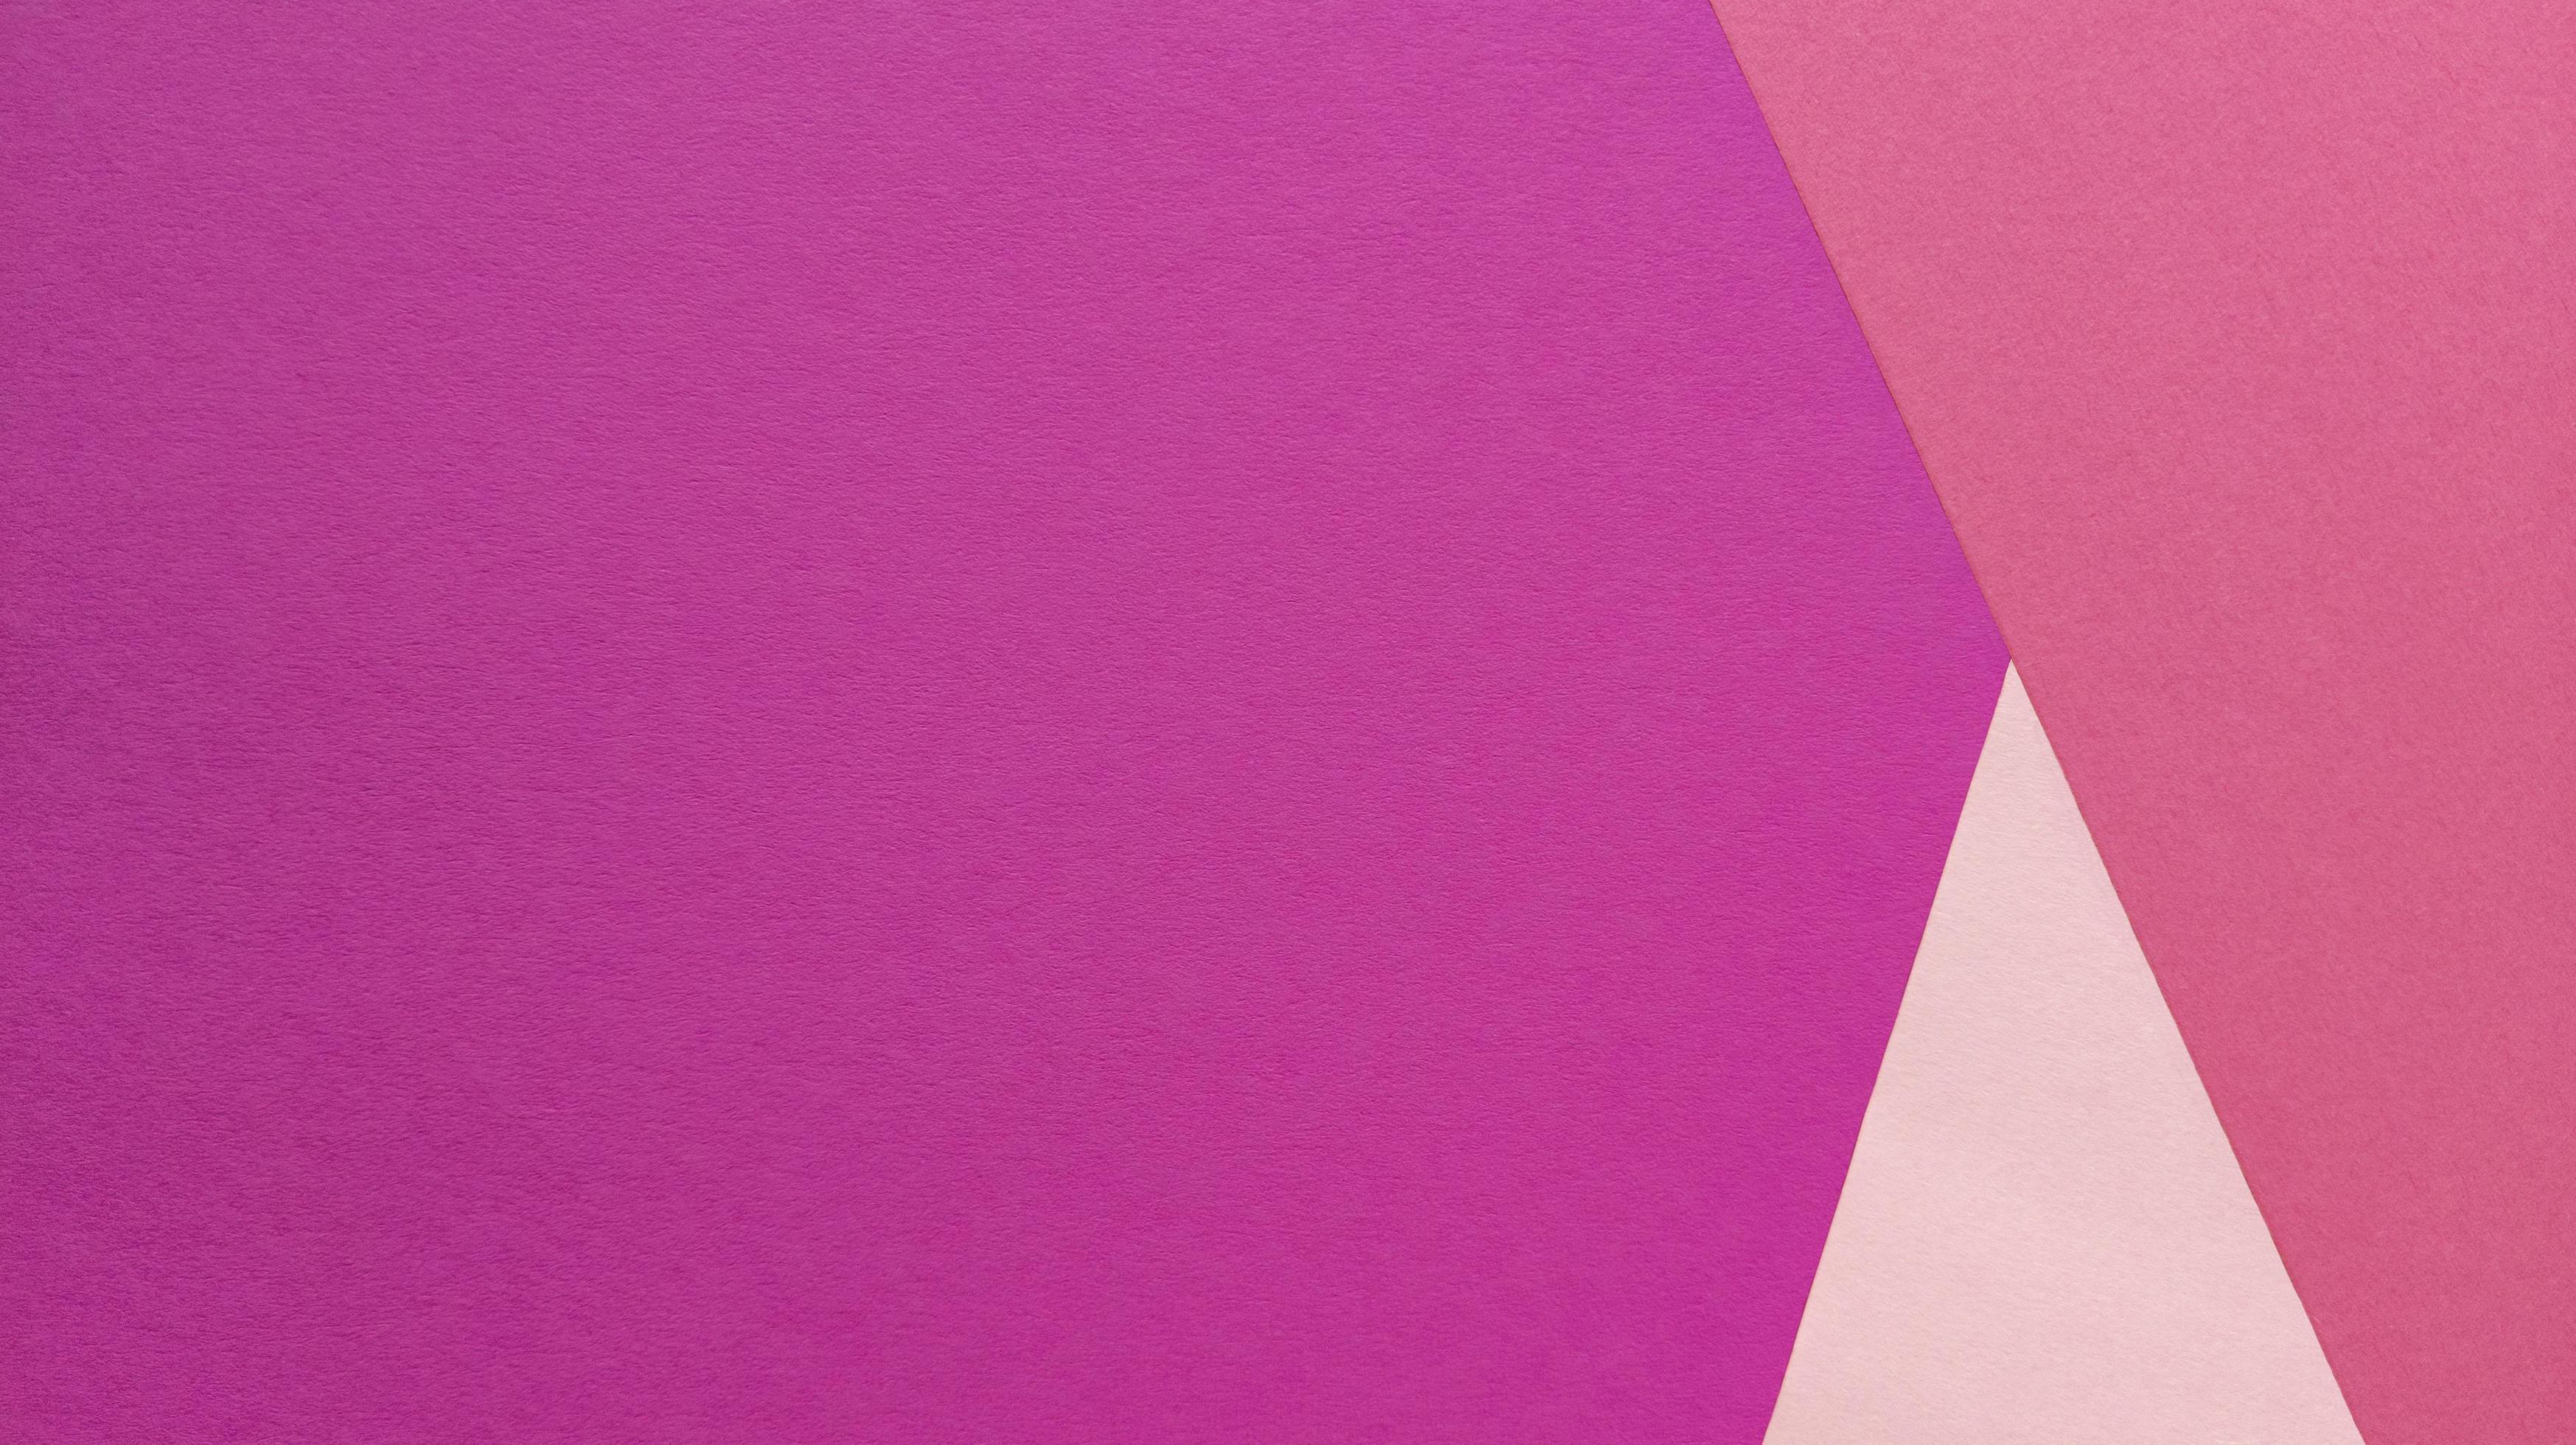 mise à plat simple avec une texture pastel et des formes triangulaires. fond de papier rose. photo de stock.